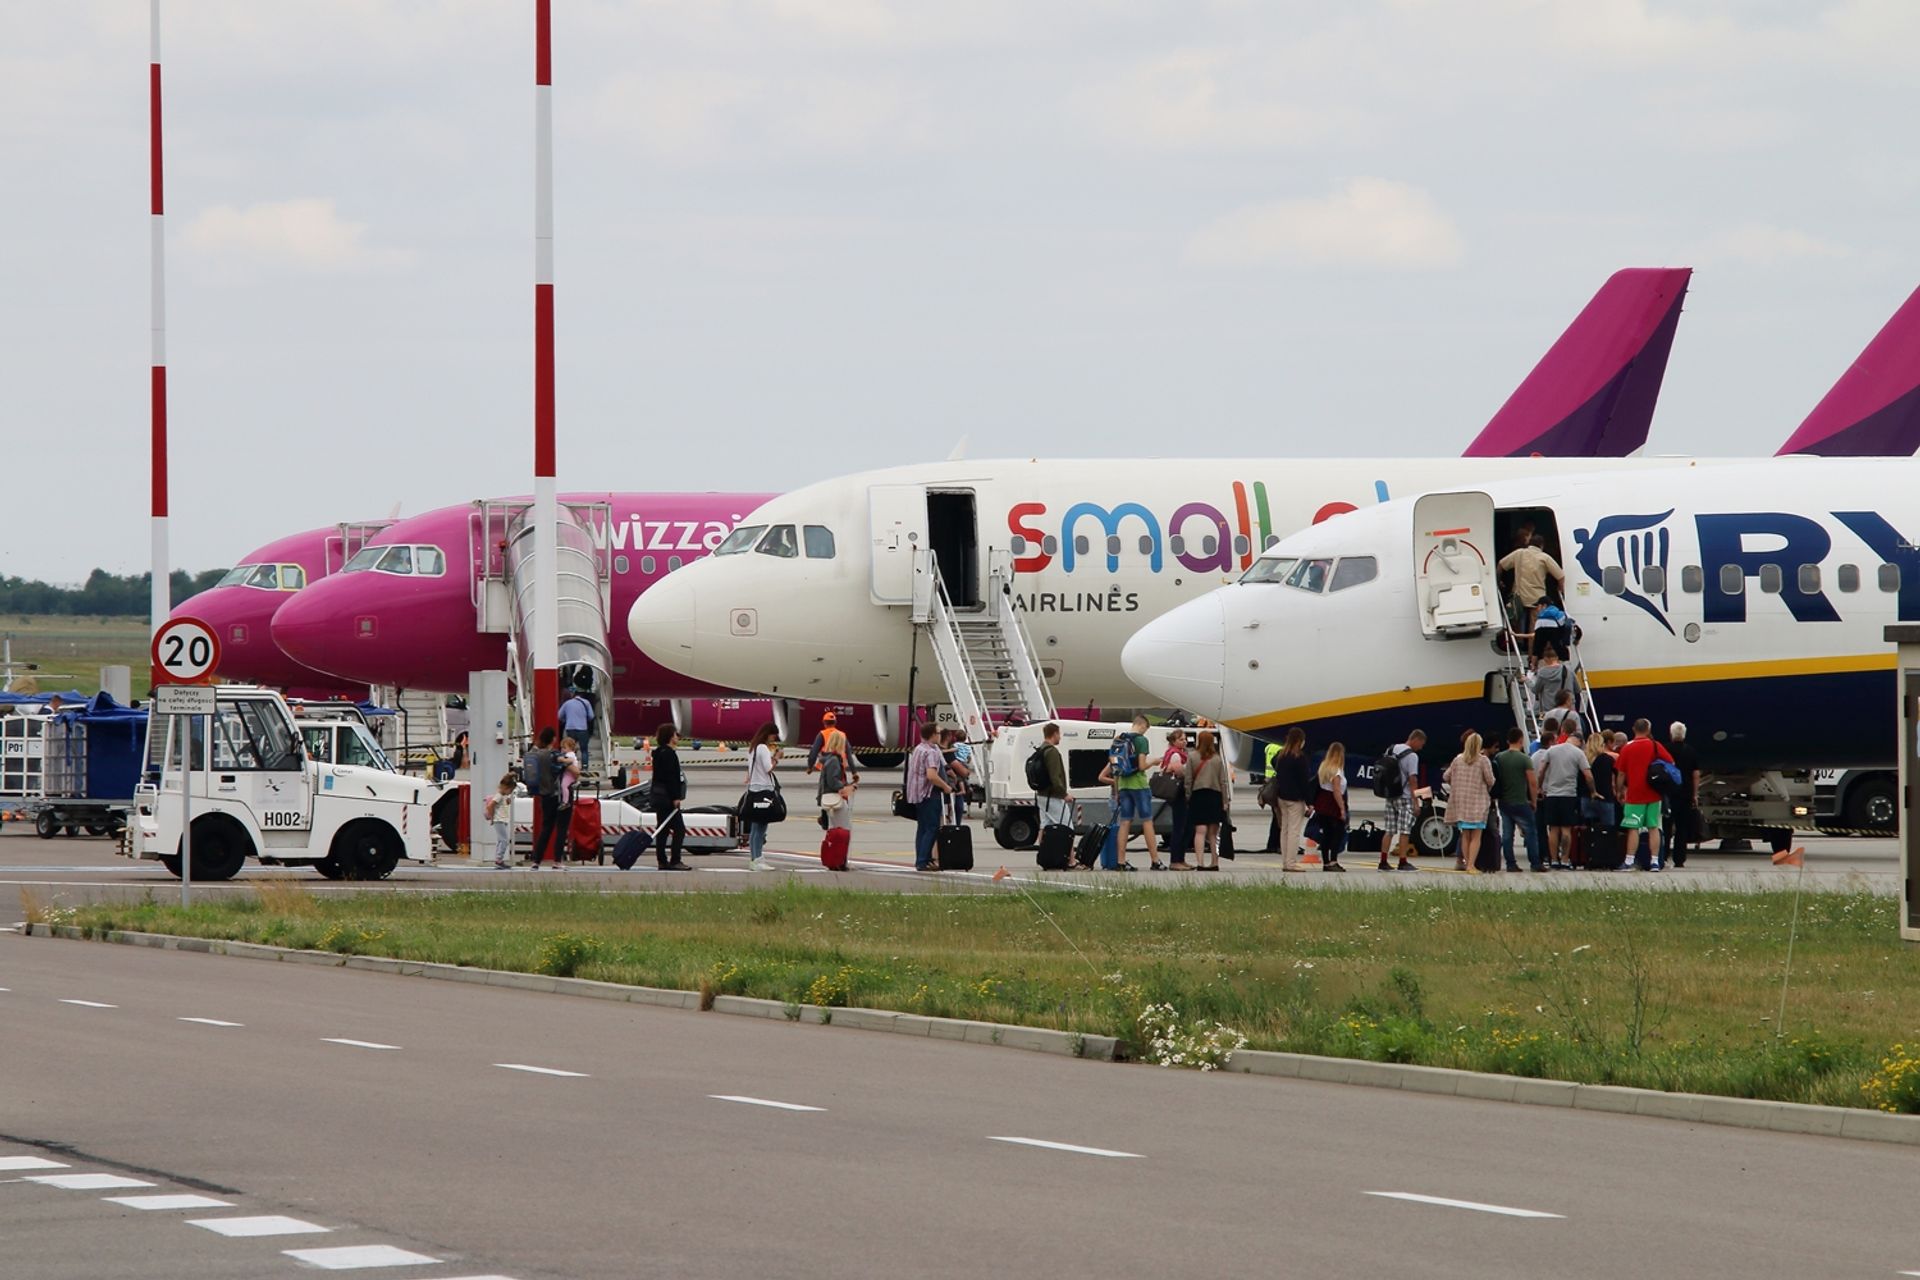  1,5 miliona pasażerów odprawionych w Porcie Lotniczym Lublin